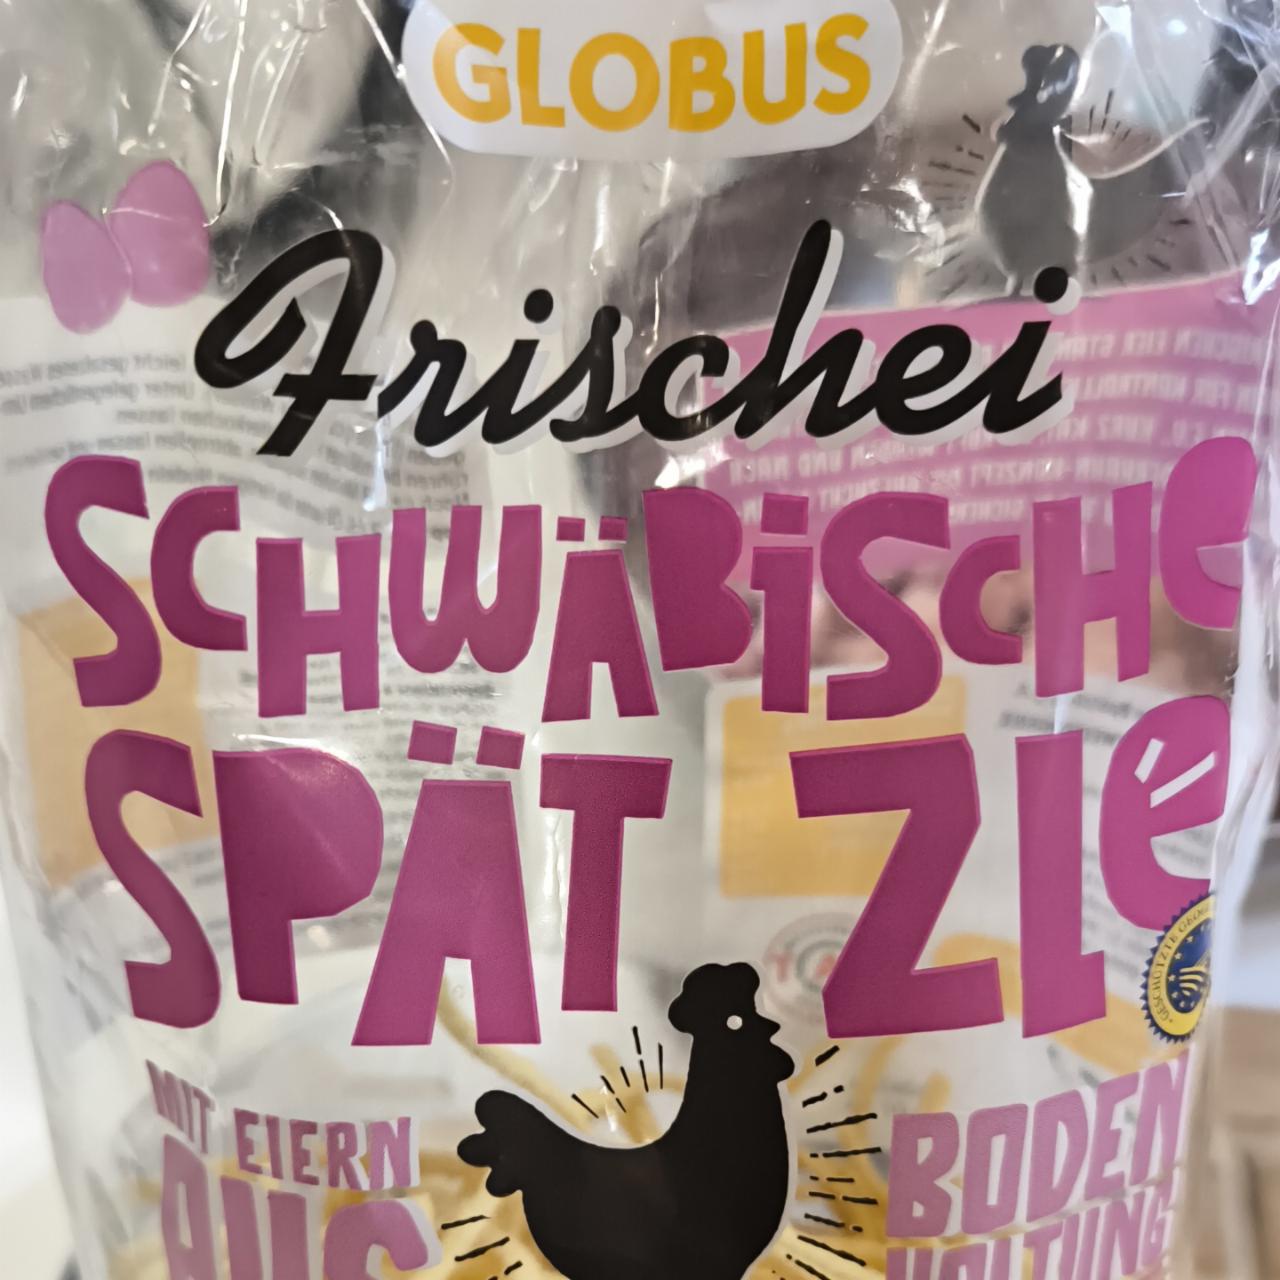 Fotografie - Frischei Schwäbische Spätzle Globus